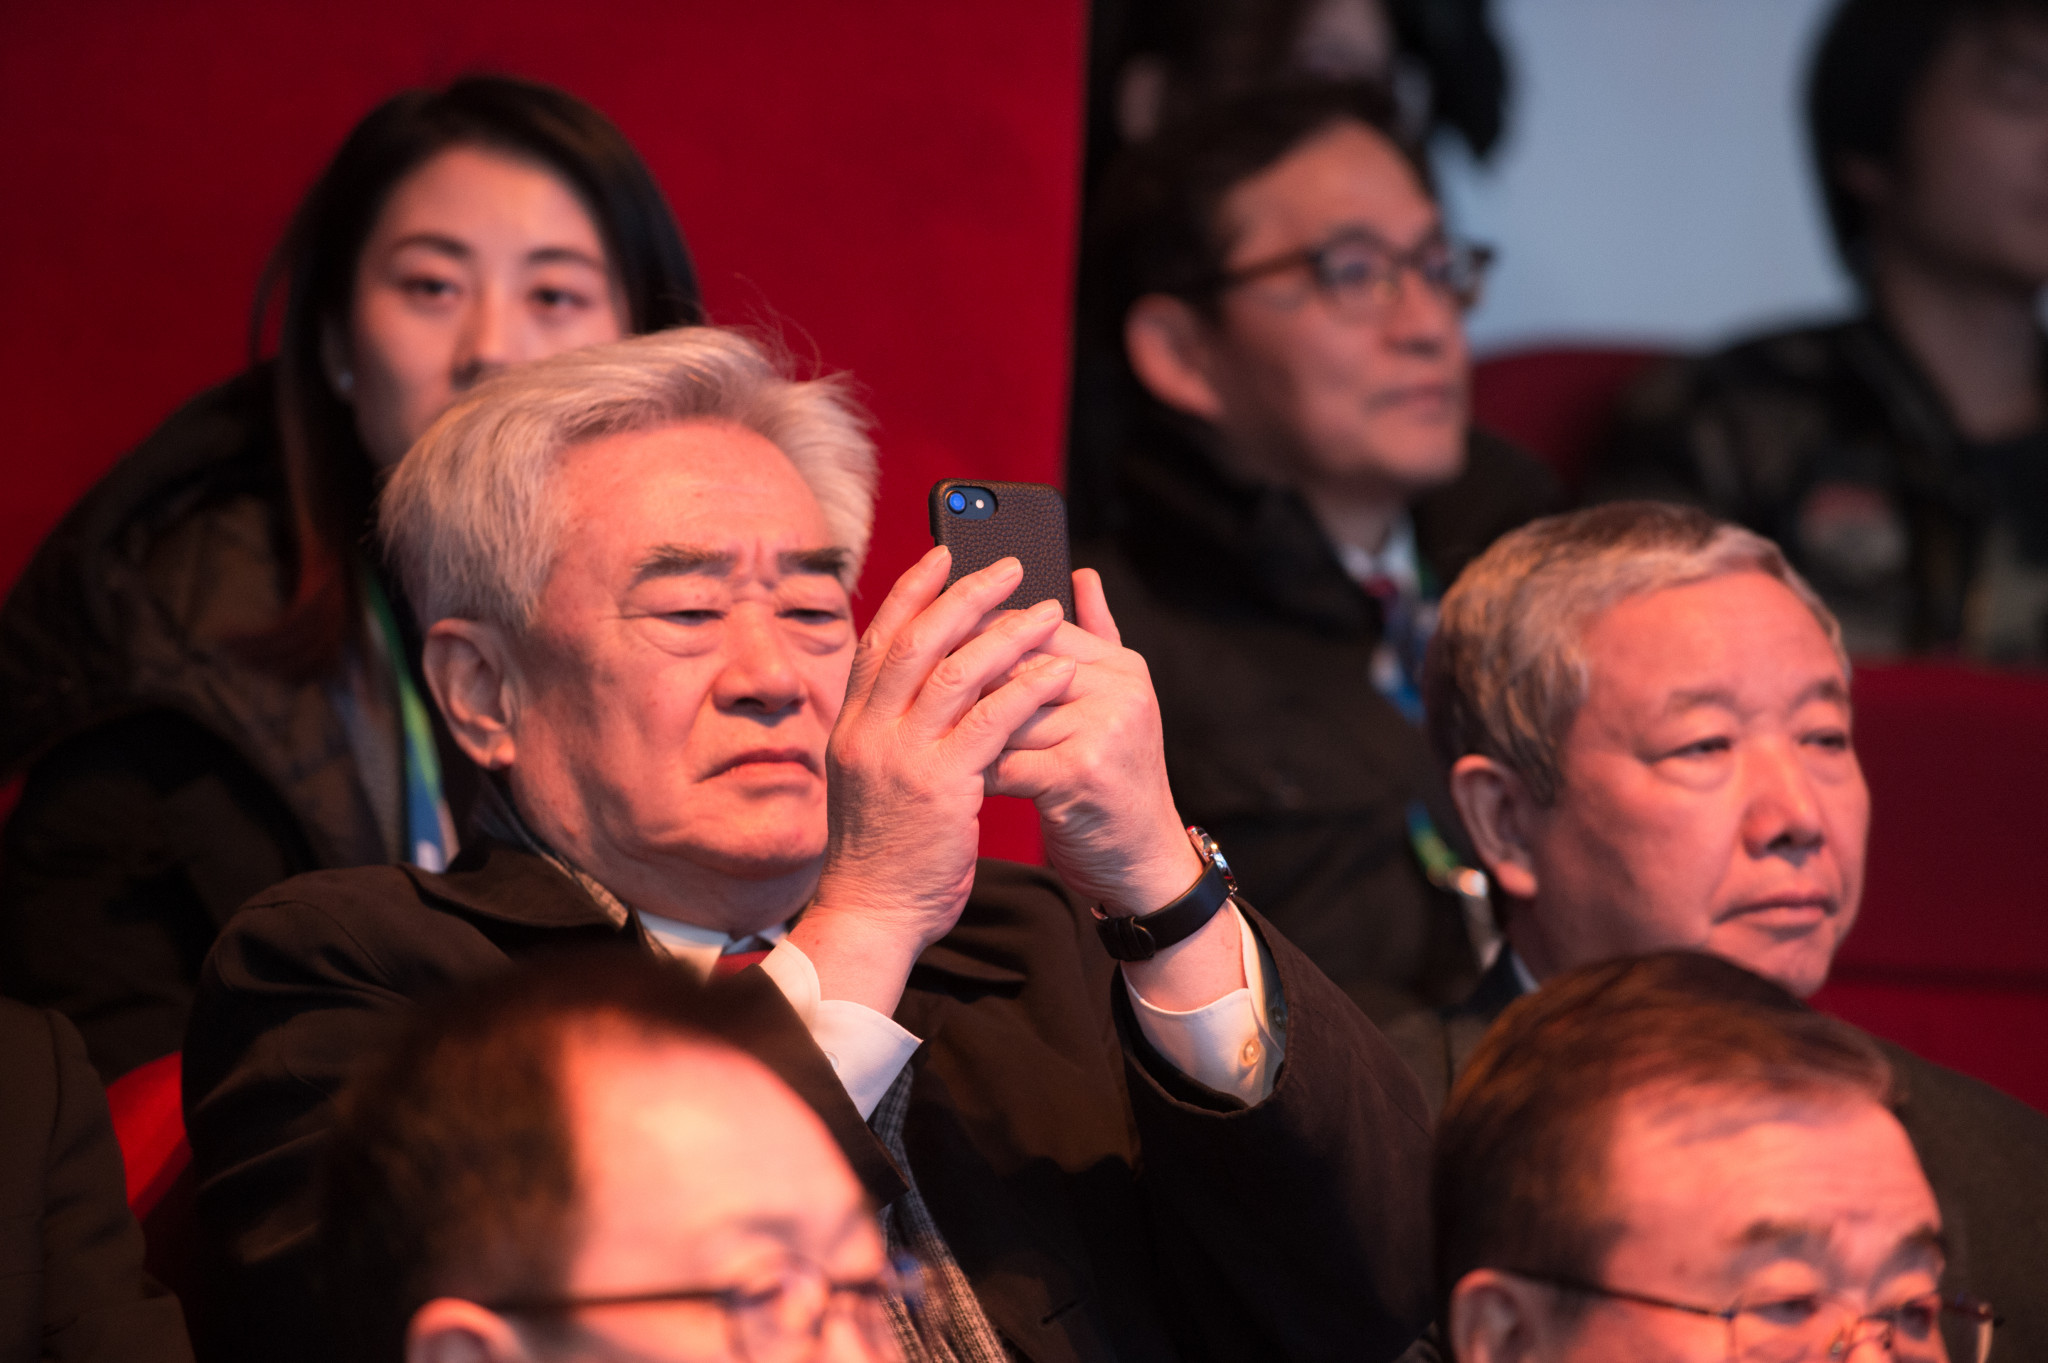 World Taekwondo boss Chungwon Choue, left, photographs the competition while sitting next to China's IOC vice-president Yu Zaiqing ©World Taekwondo